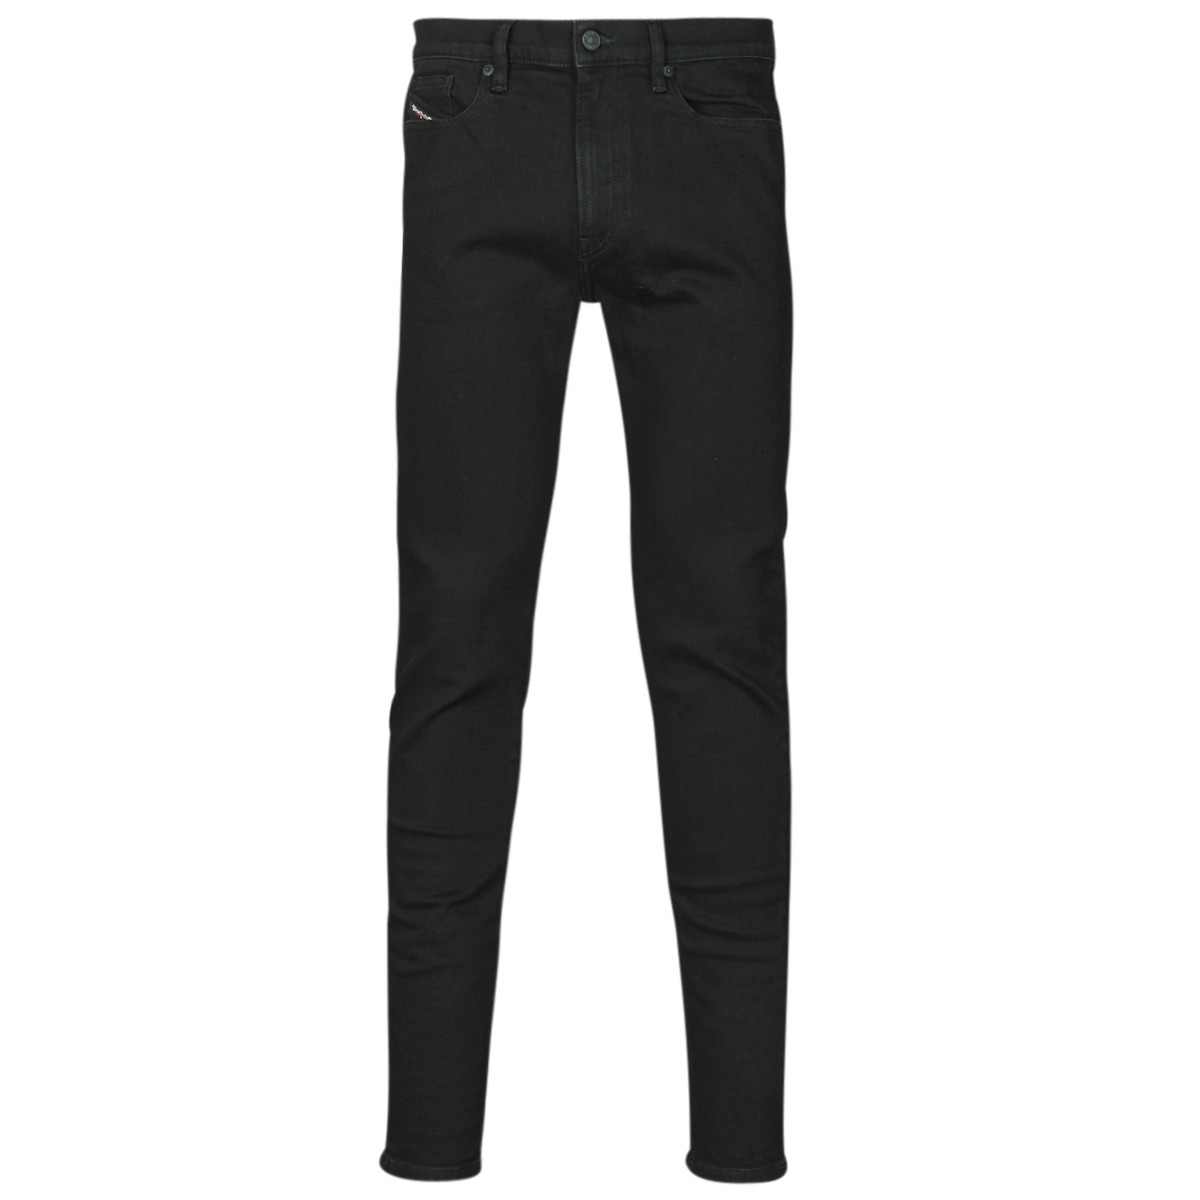 Gent Black Skinny Jeans Spartoo Diesel GOOFASH